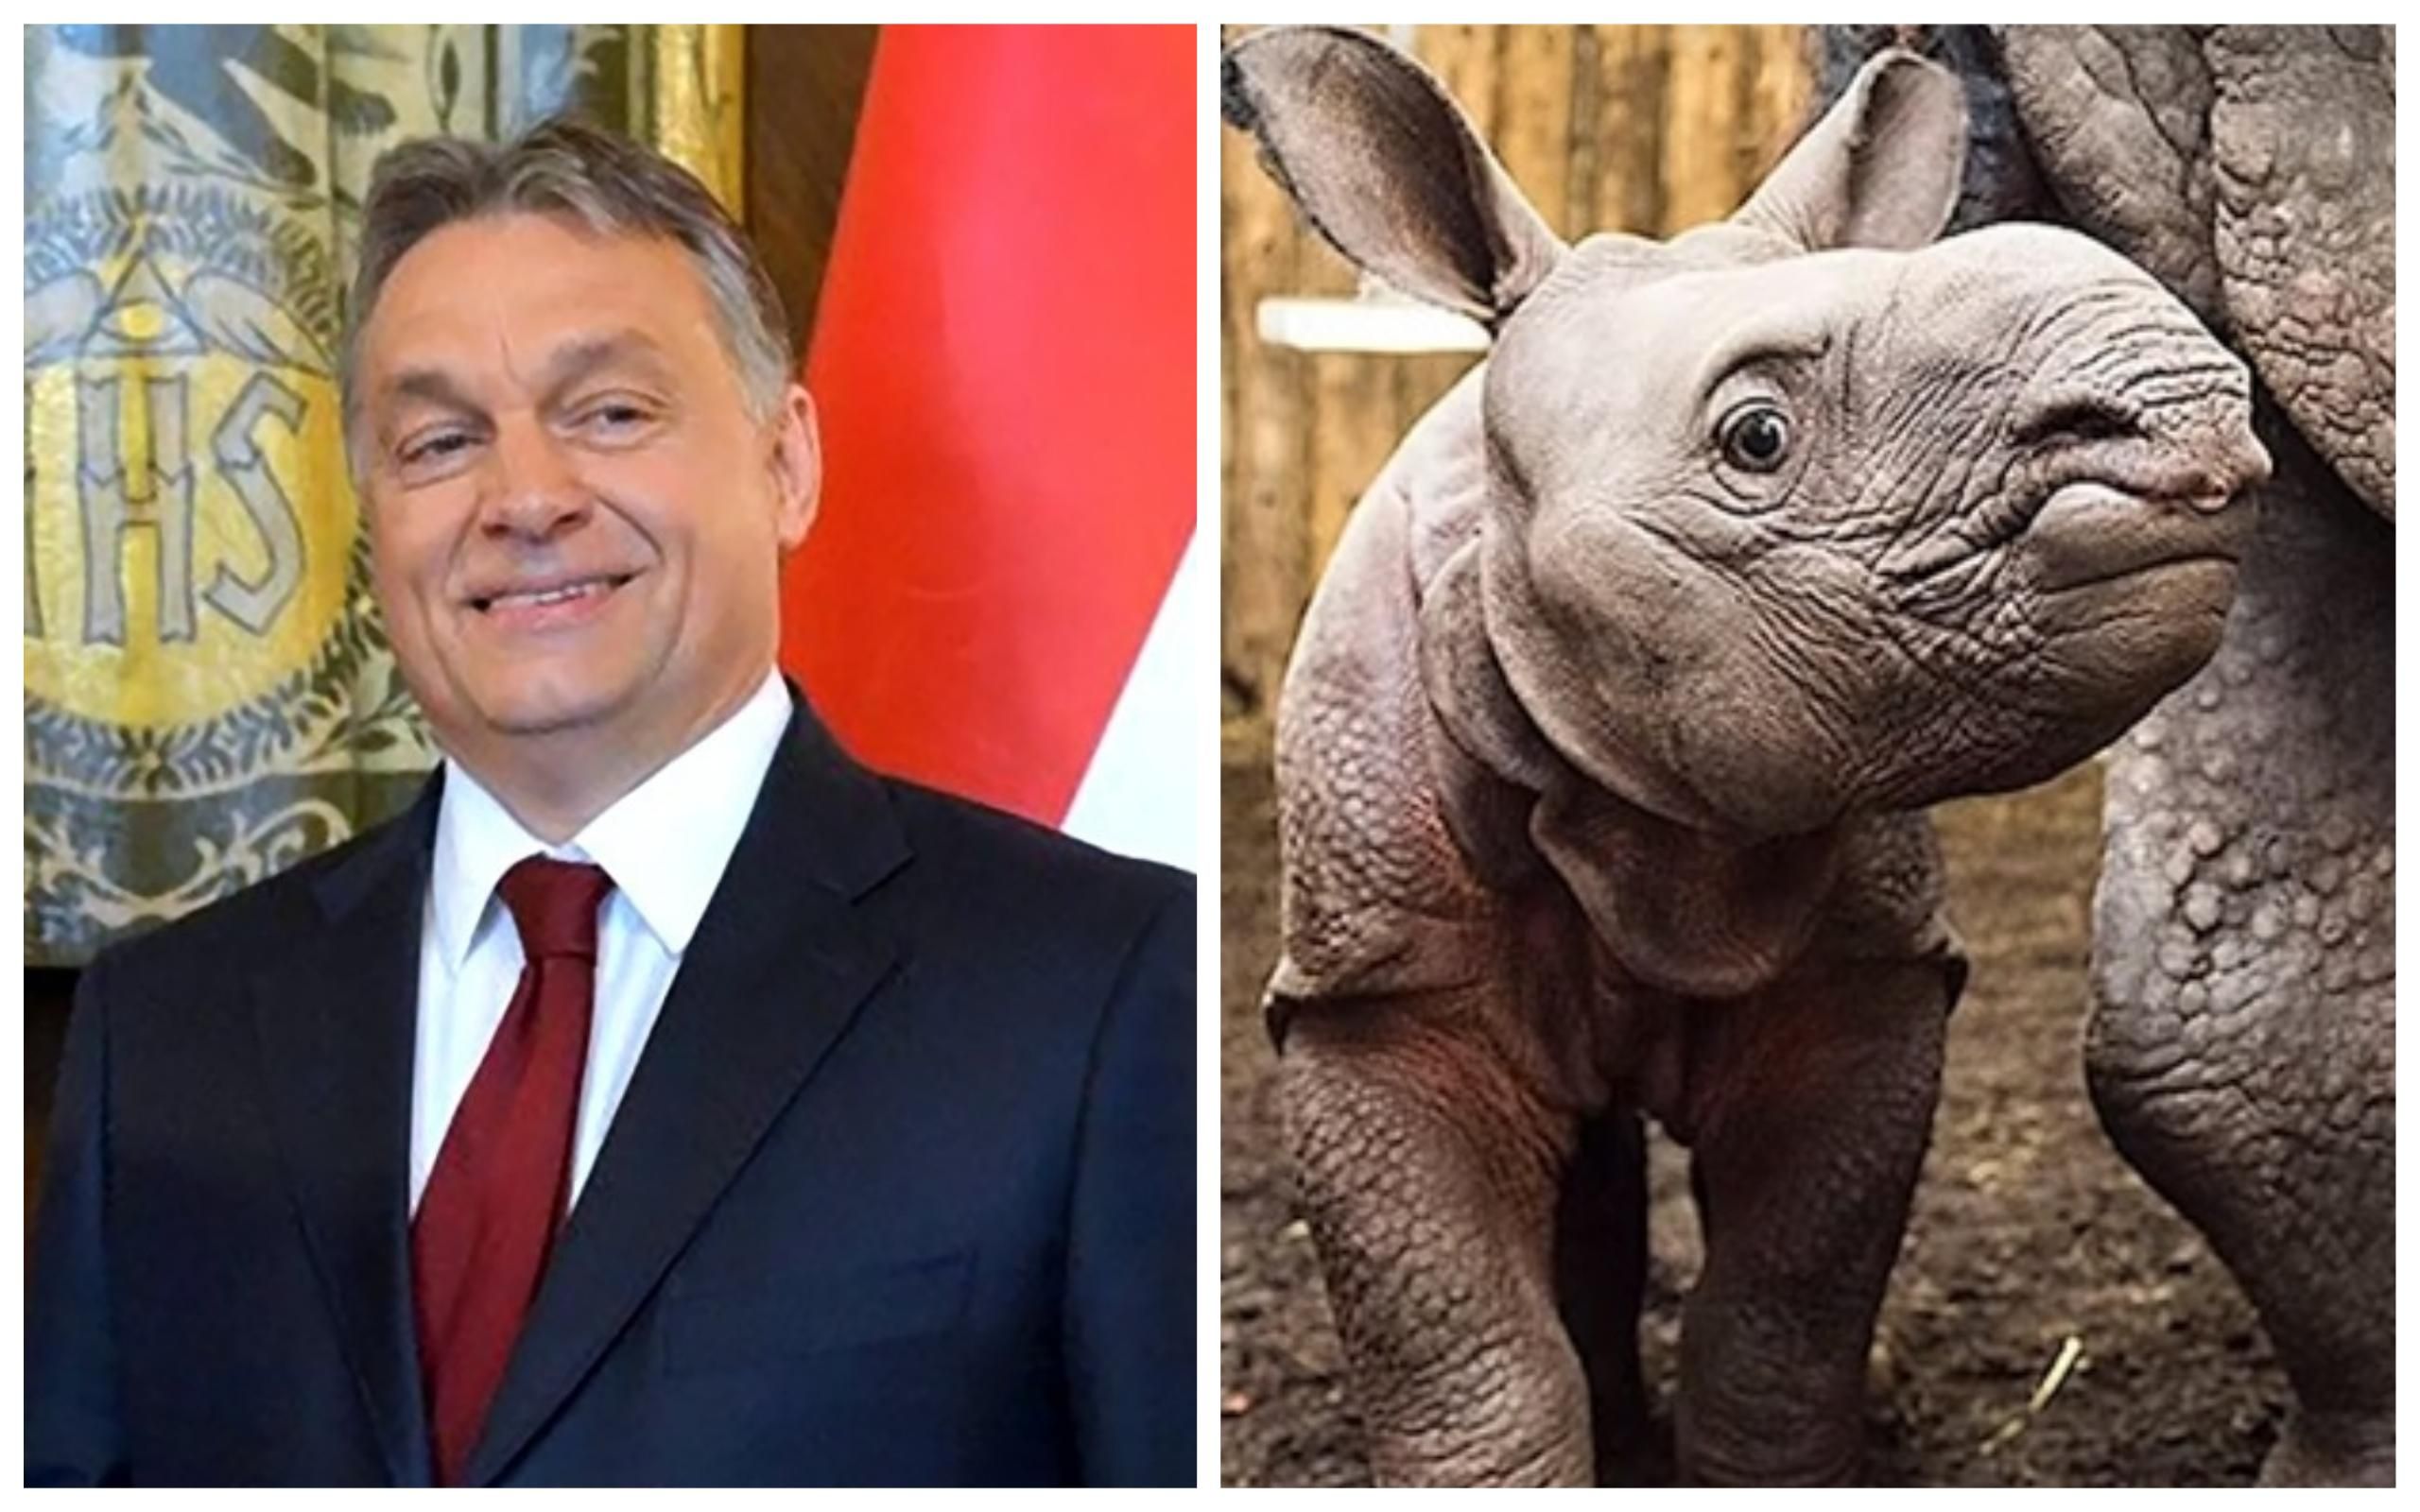 Угорський прем'єр Орбан "всиновив" носорога: у мережі обирають тварині ім’я